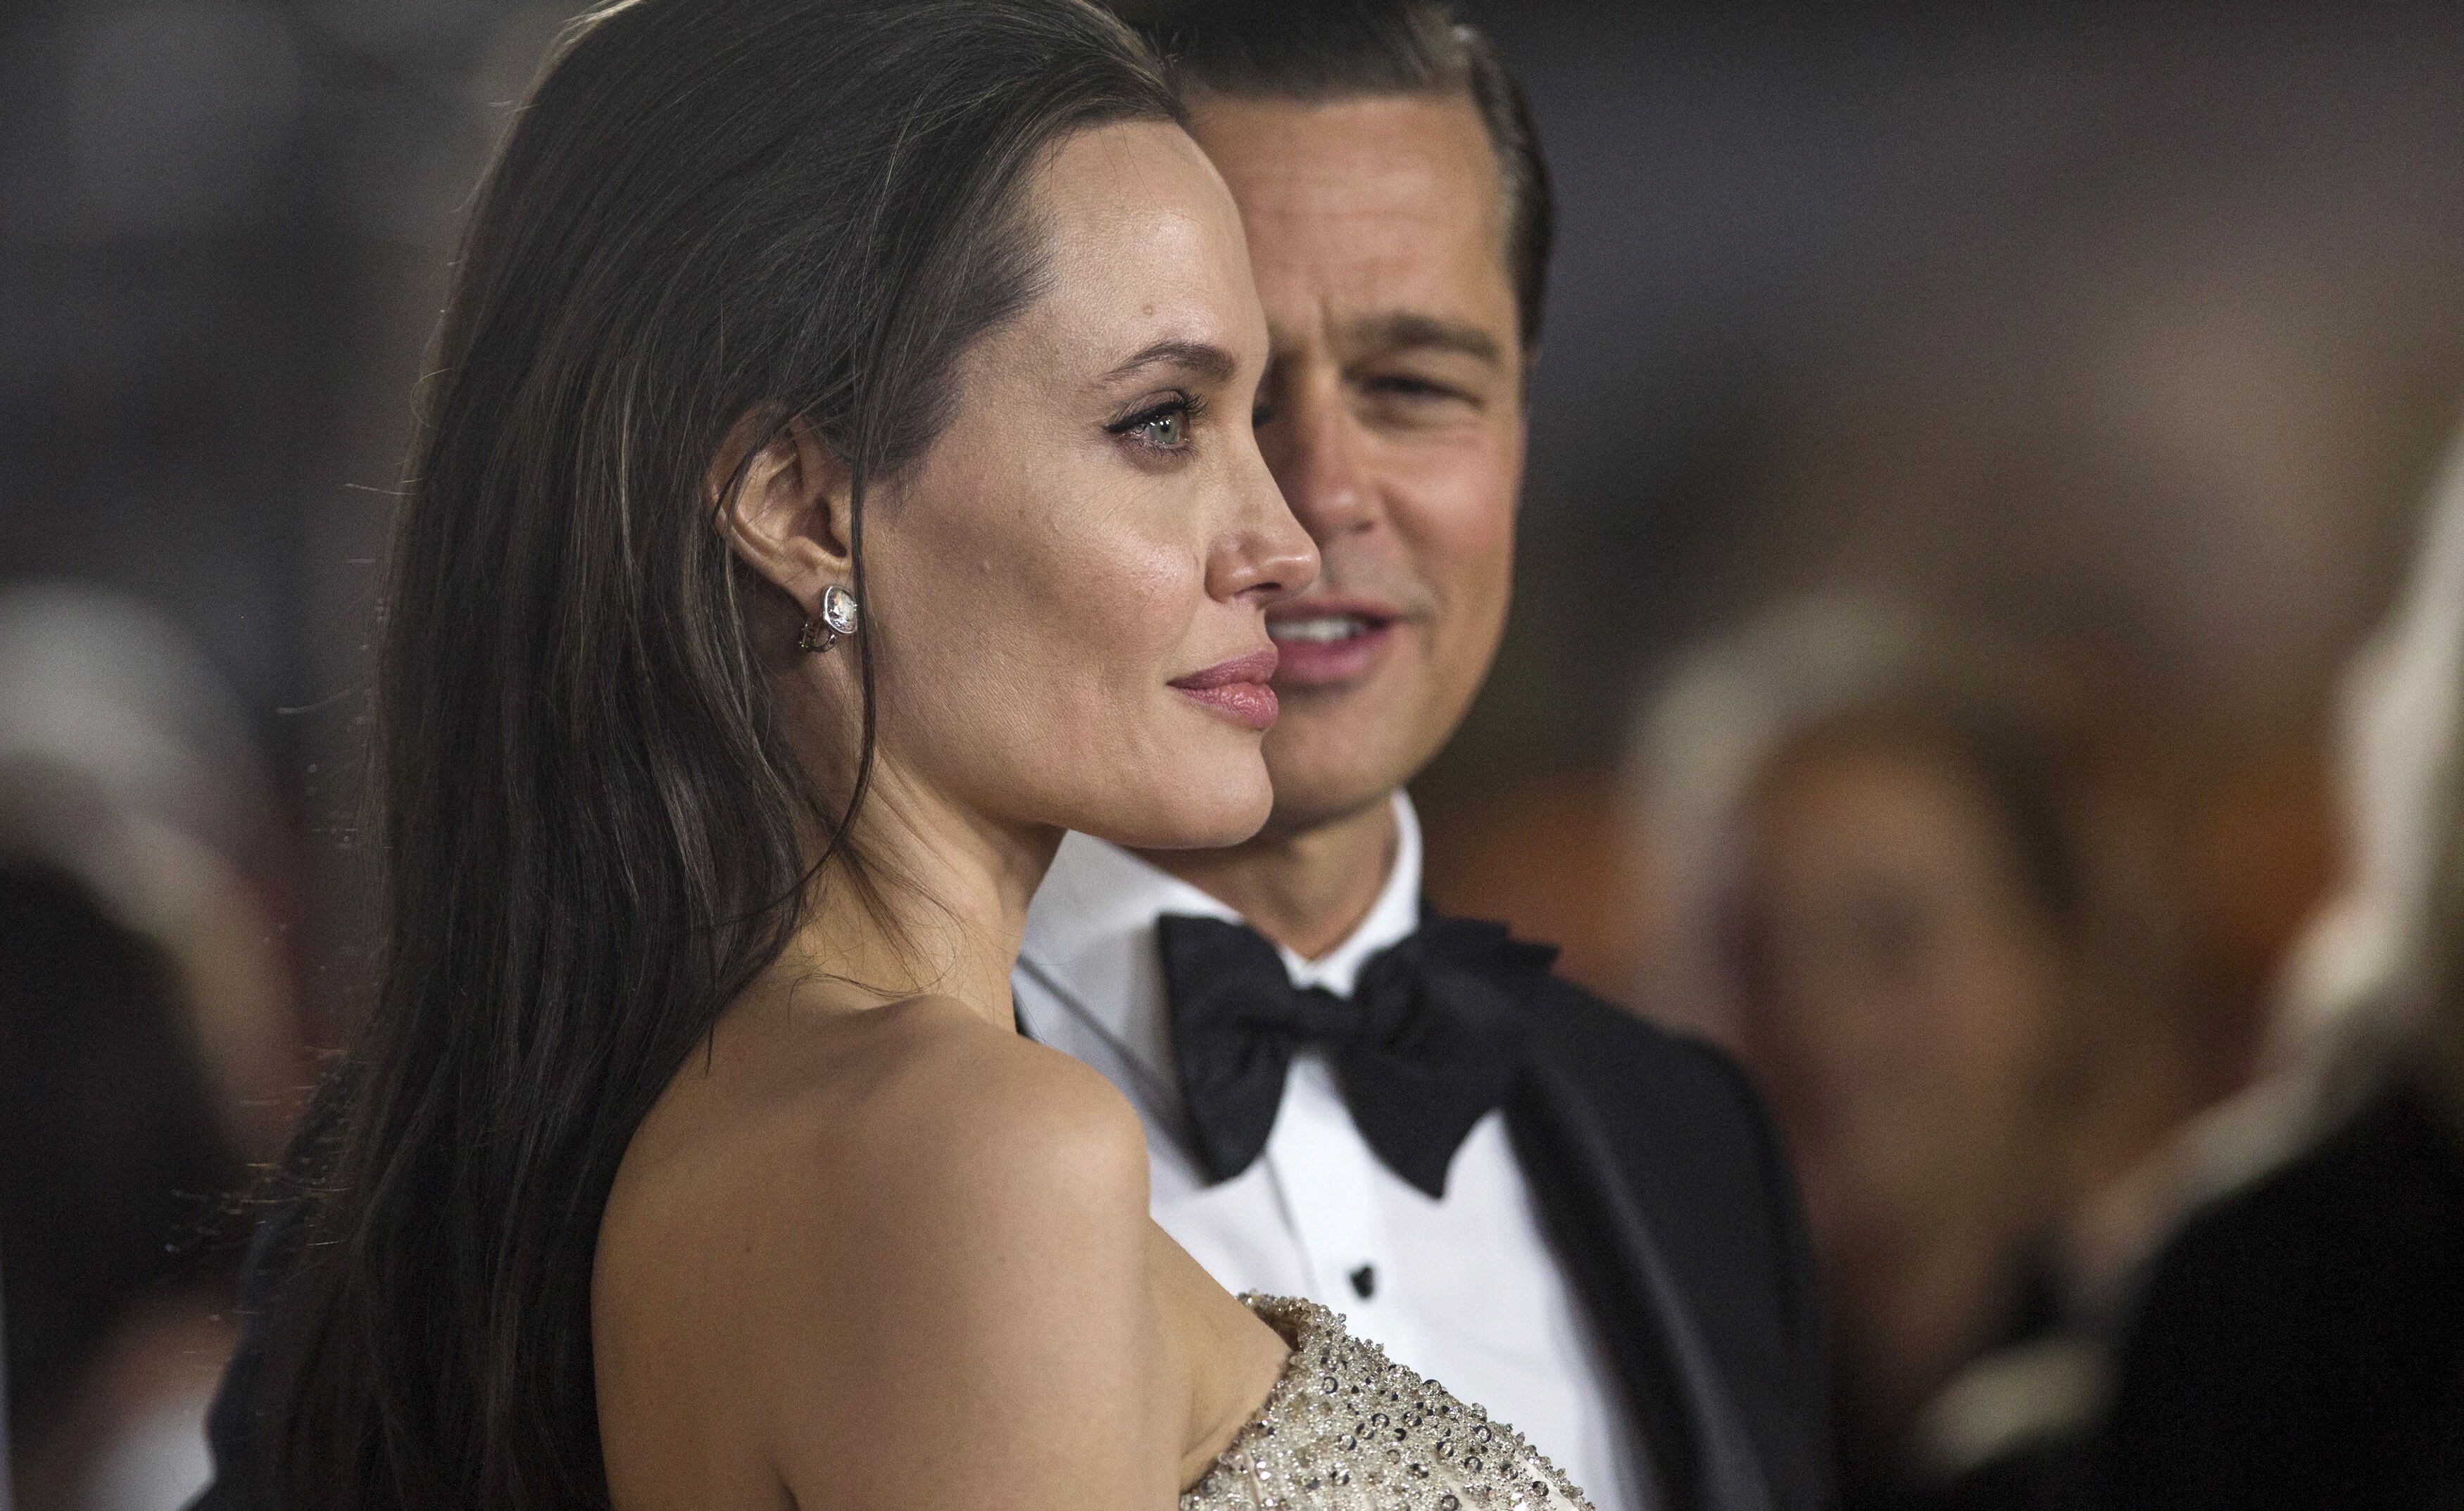 El FBI abrió un caso sobre los abusos físicos de Brad Pitt, aunque Angelina Jolie se rehusó a presentar cargos. (Créditos: REUTERS/Mario Anzuoni)